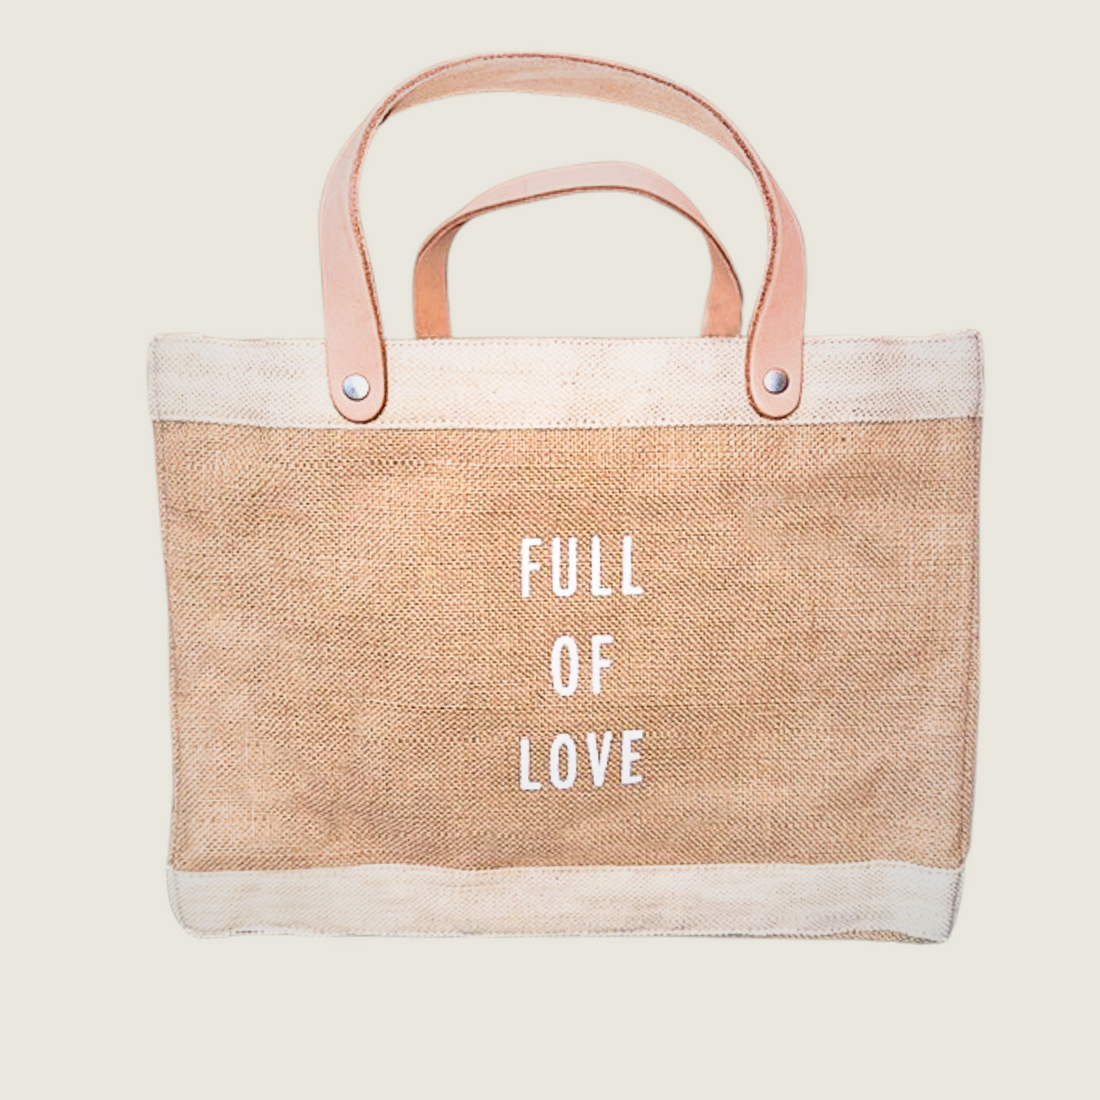 Full of Love Bag - Natural - Blackbird General Store